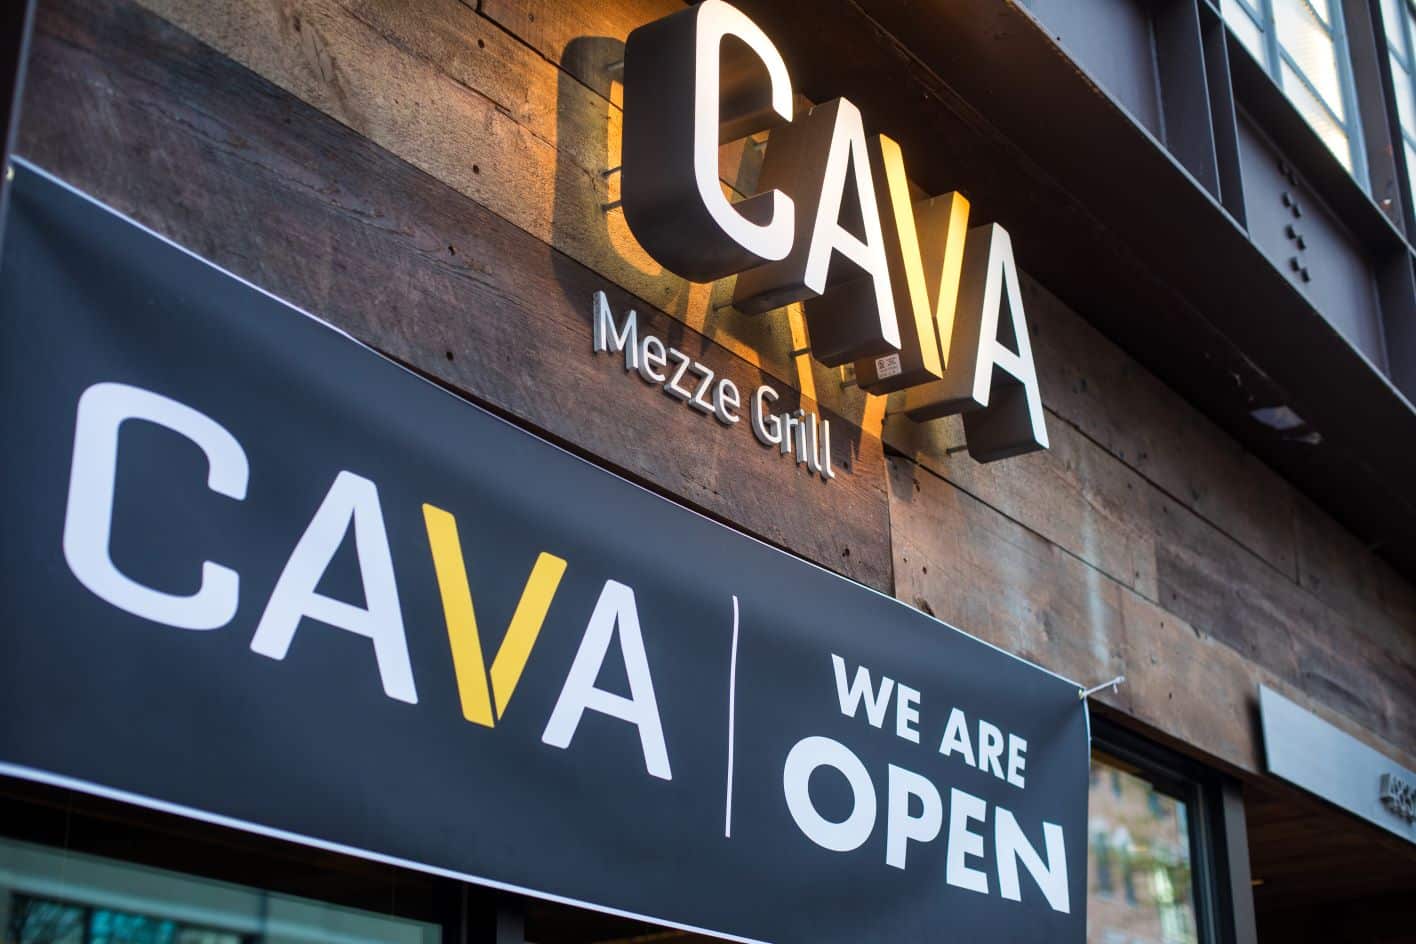 The exterior of a CAVA restaurant